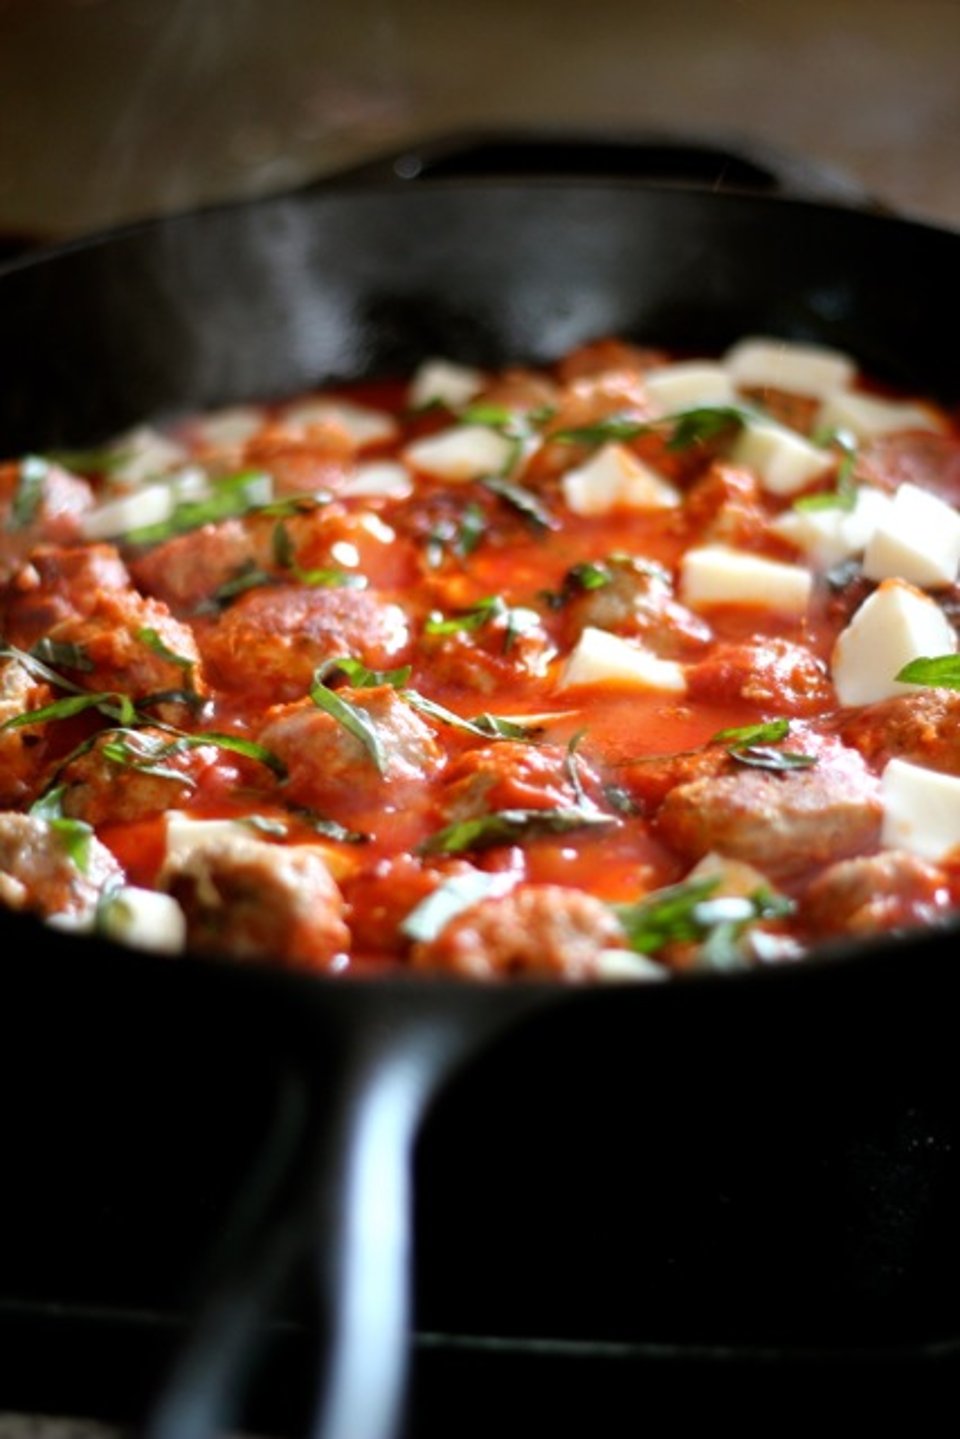 Фрикадельки в томатном соусе на сковороде рецепт с фото